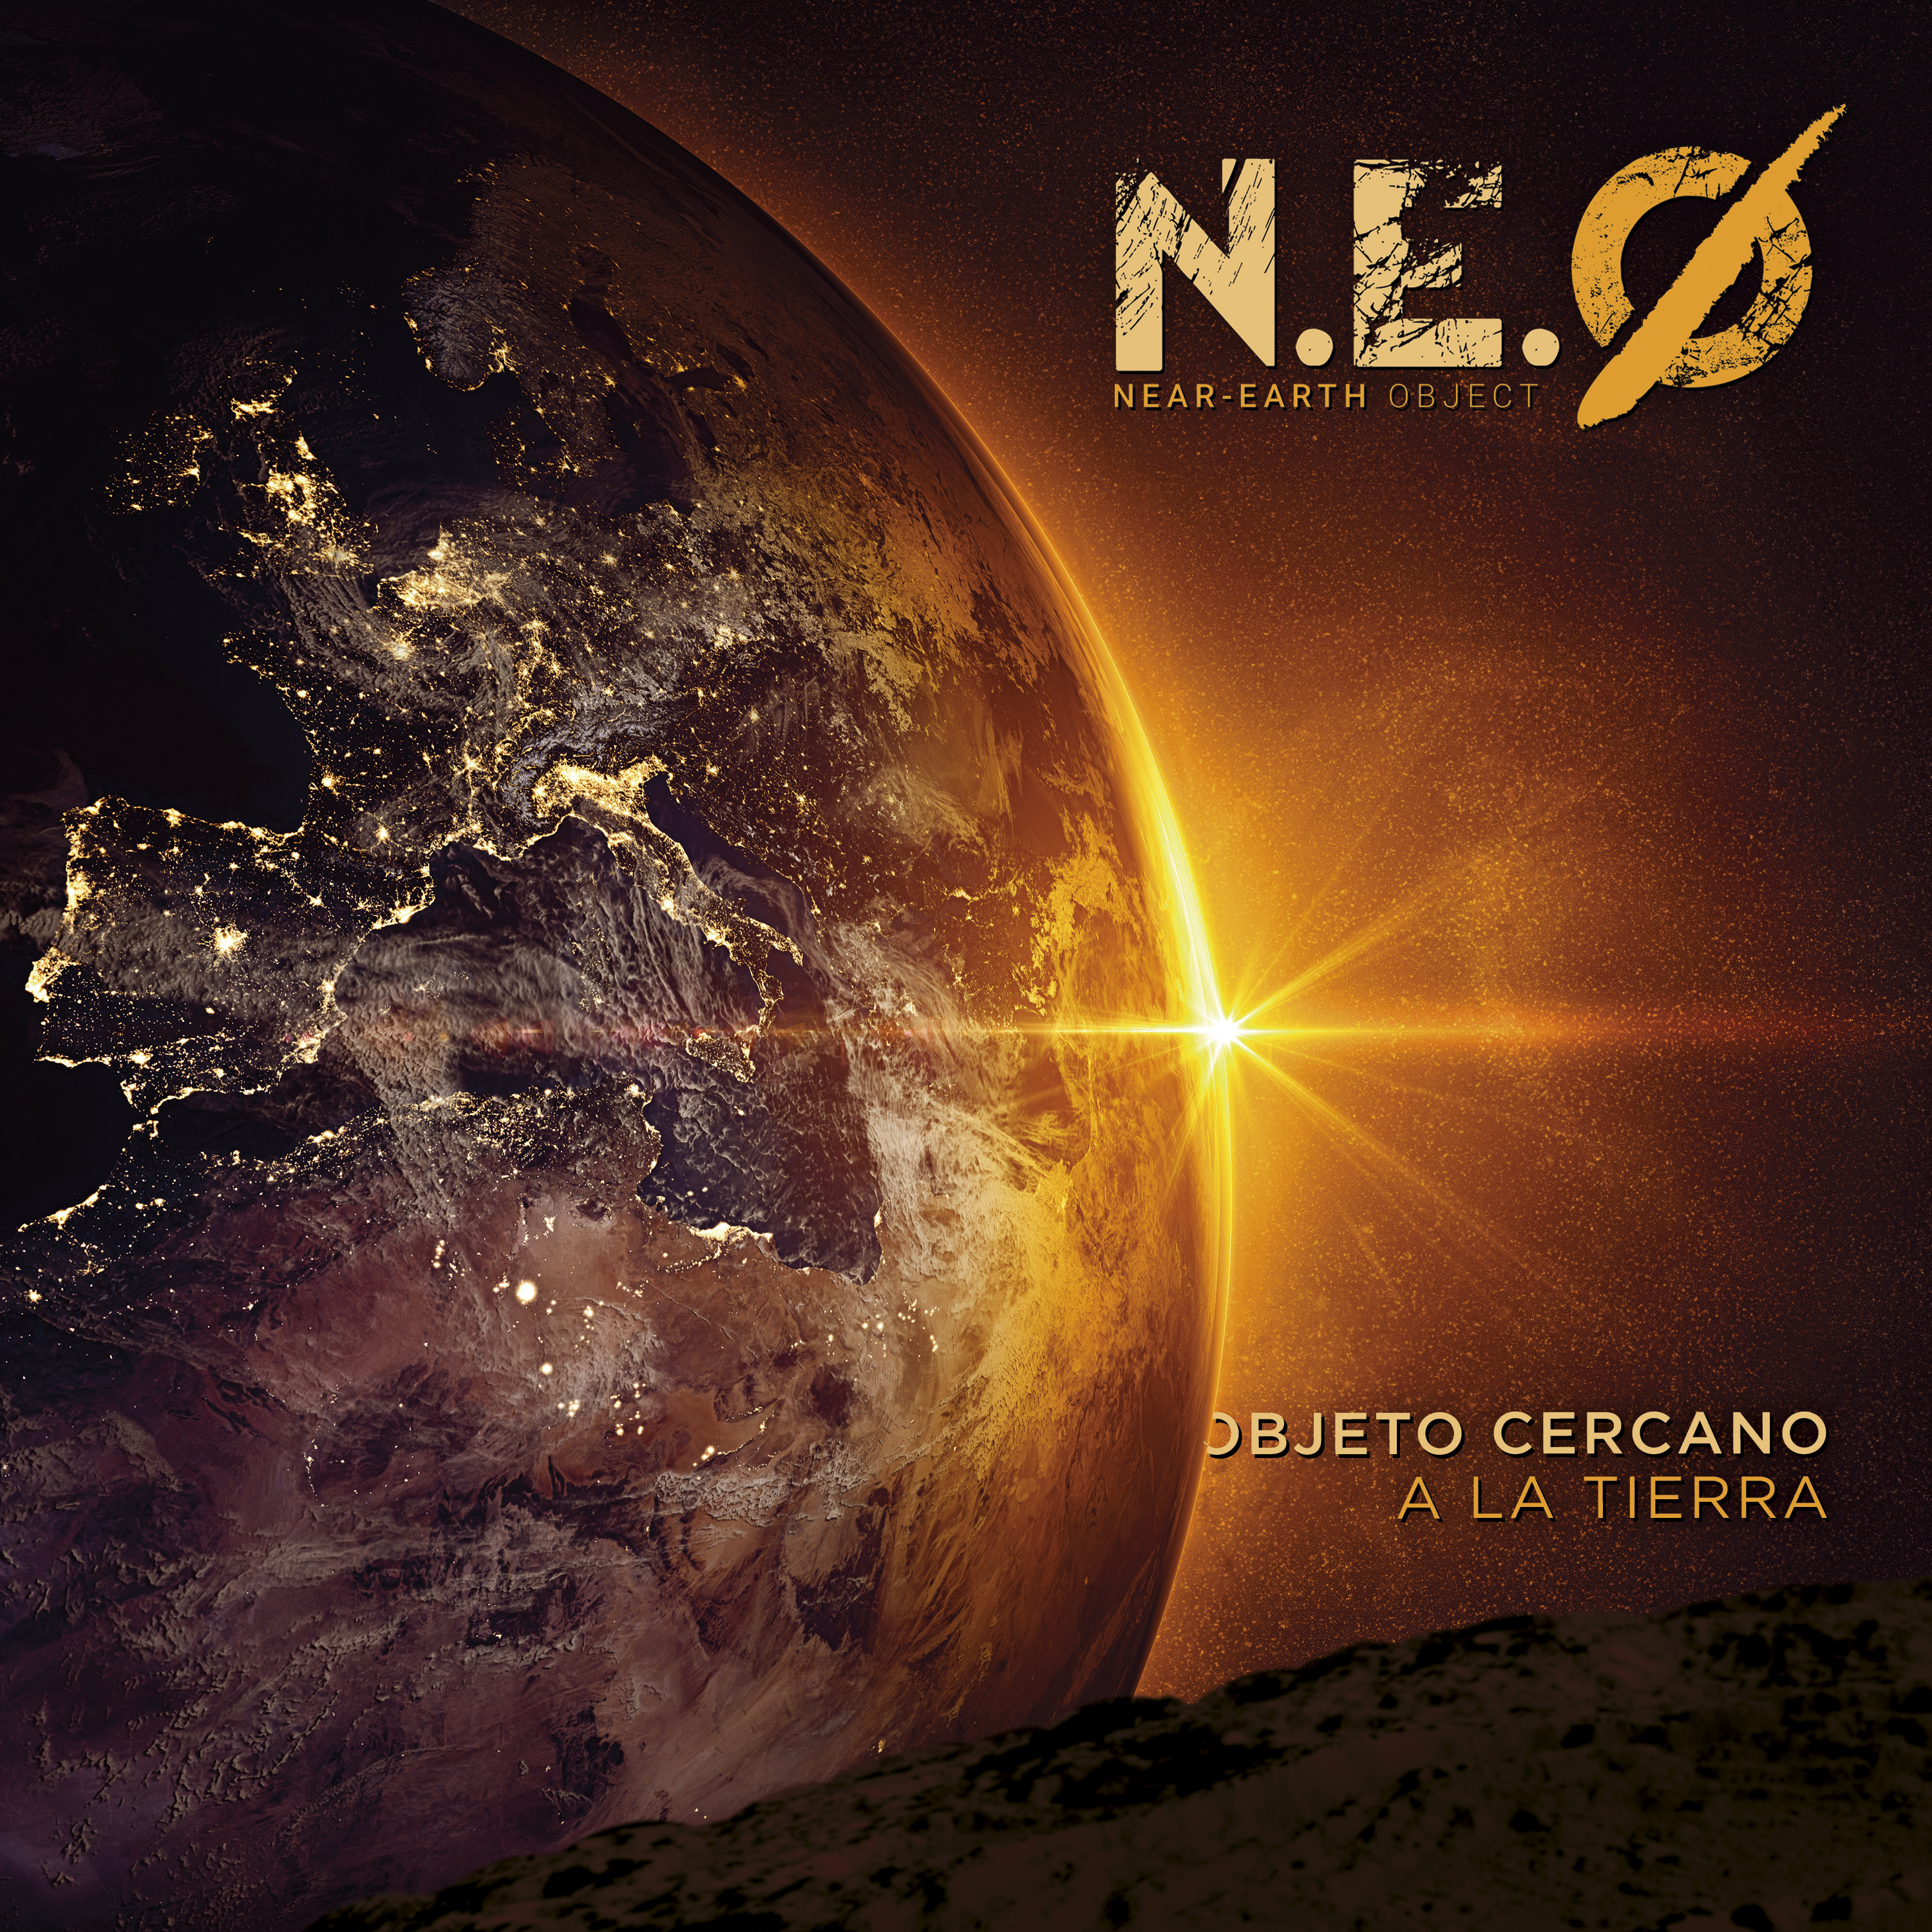 Reseña de “Objeto Cercano A La Tierra”, nuevo disco de N.E.O